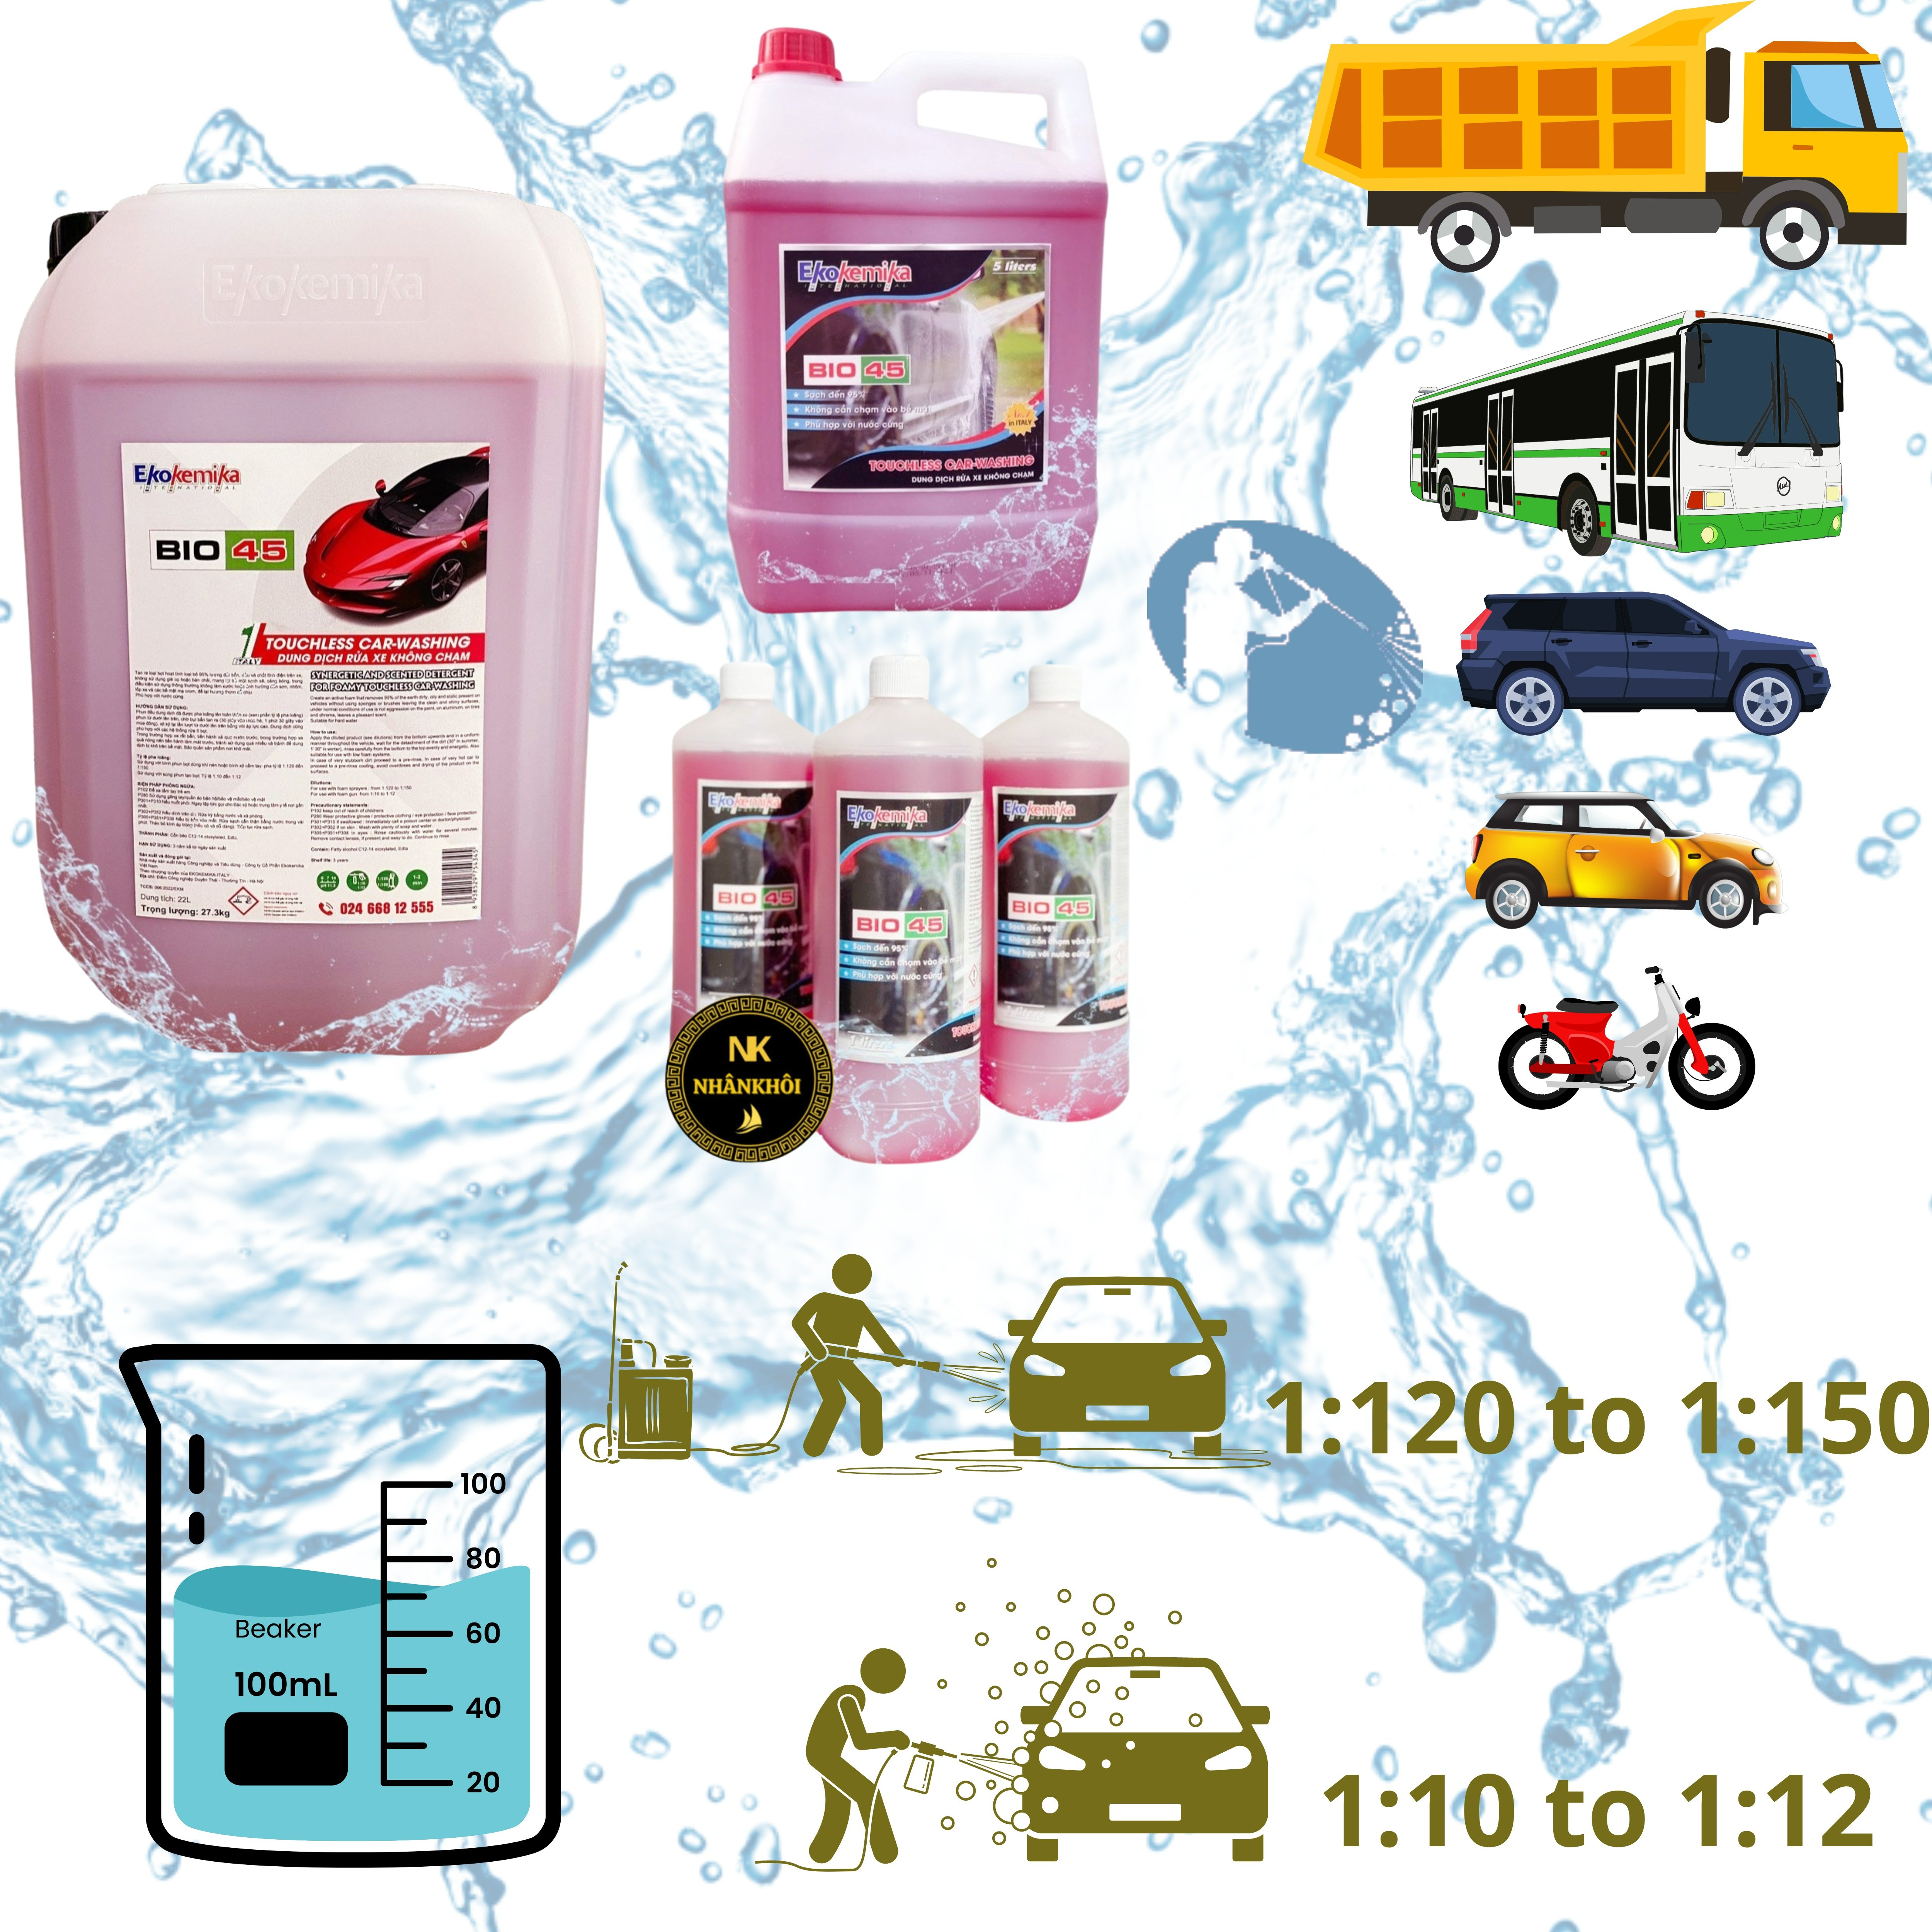 Bio 45 - 5 lít - Dung dịch rửa xe không chạm - Nước rửa xe bọt tuyết - Ekokemika